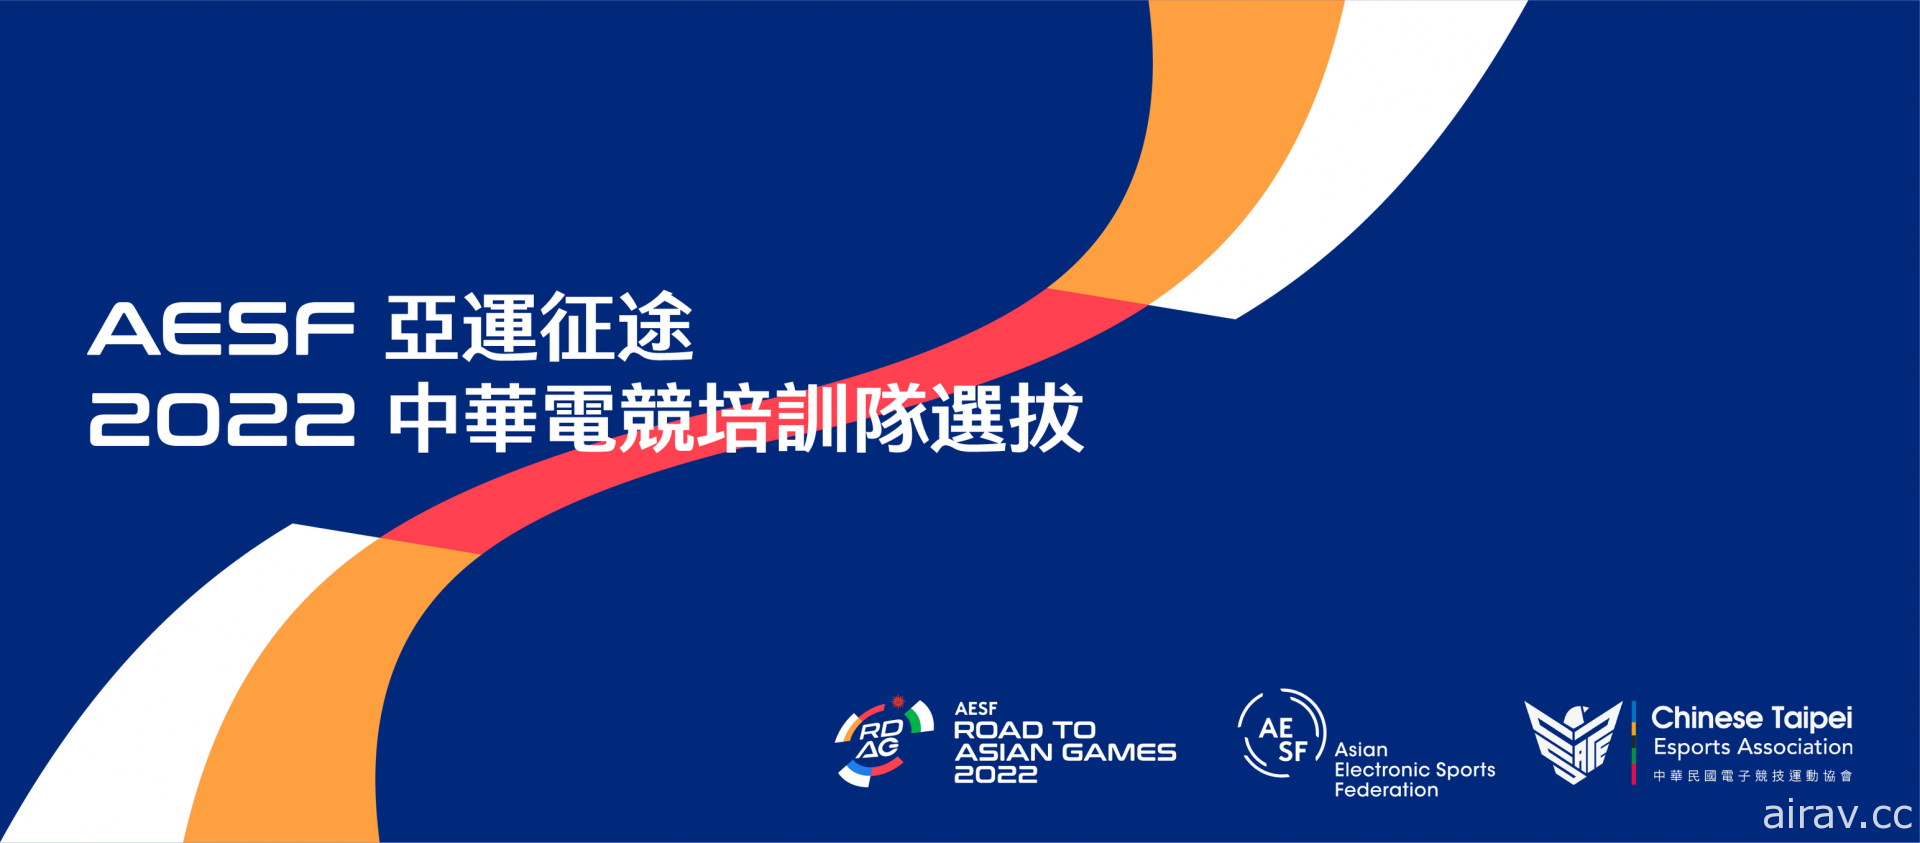 中國央視報導 2022 杭州亞運將延期舉辦 具體日期未定